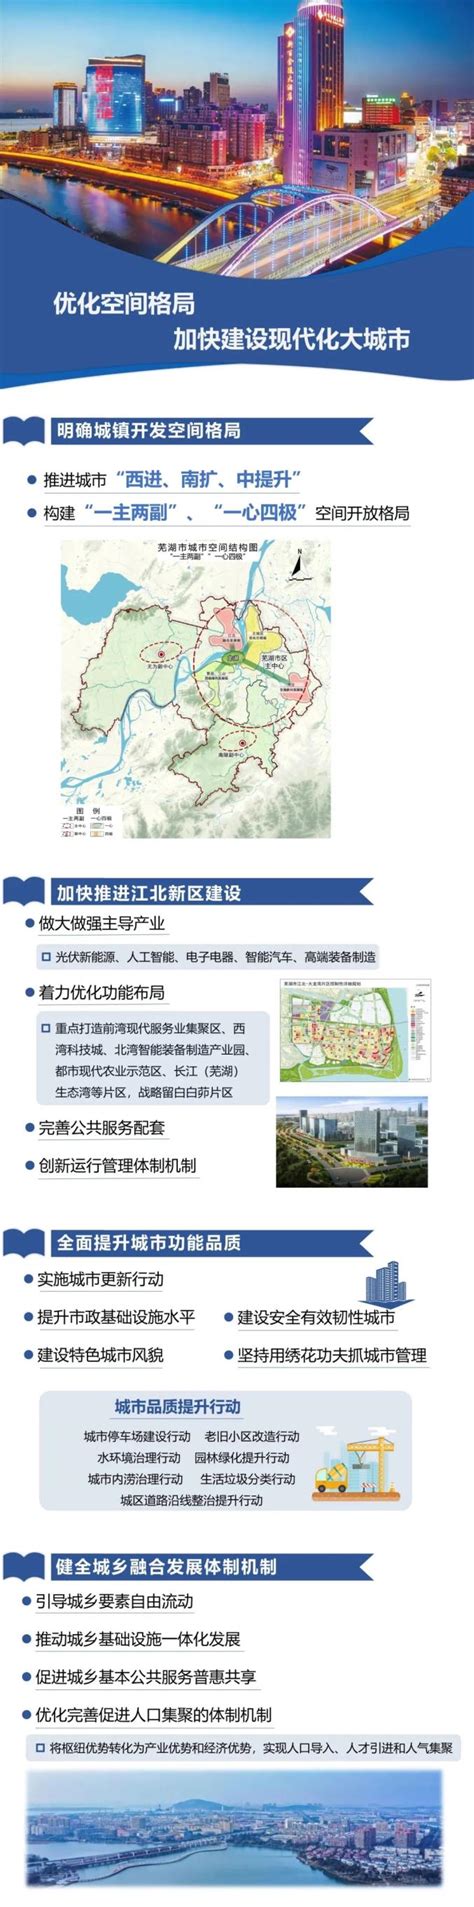 《贵州省法治宣传教育第八个五年规划(2021-2025年)》-贵州轻工职业技术学院